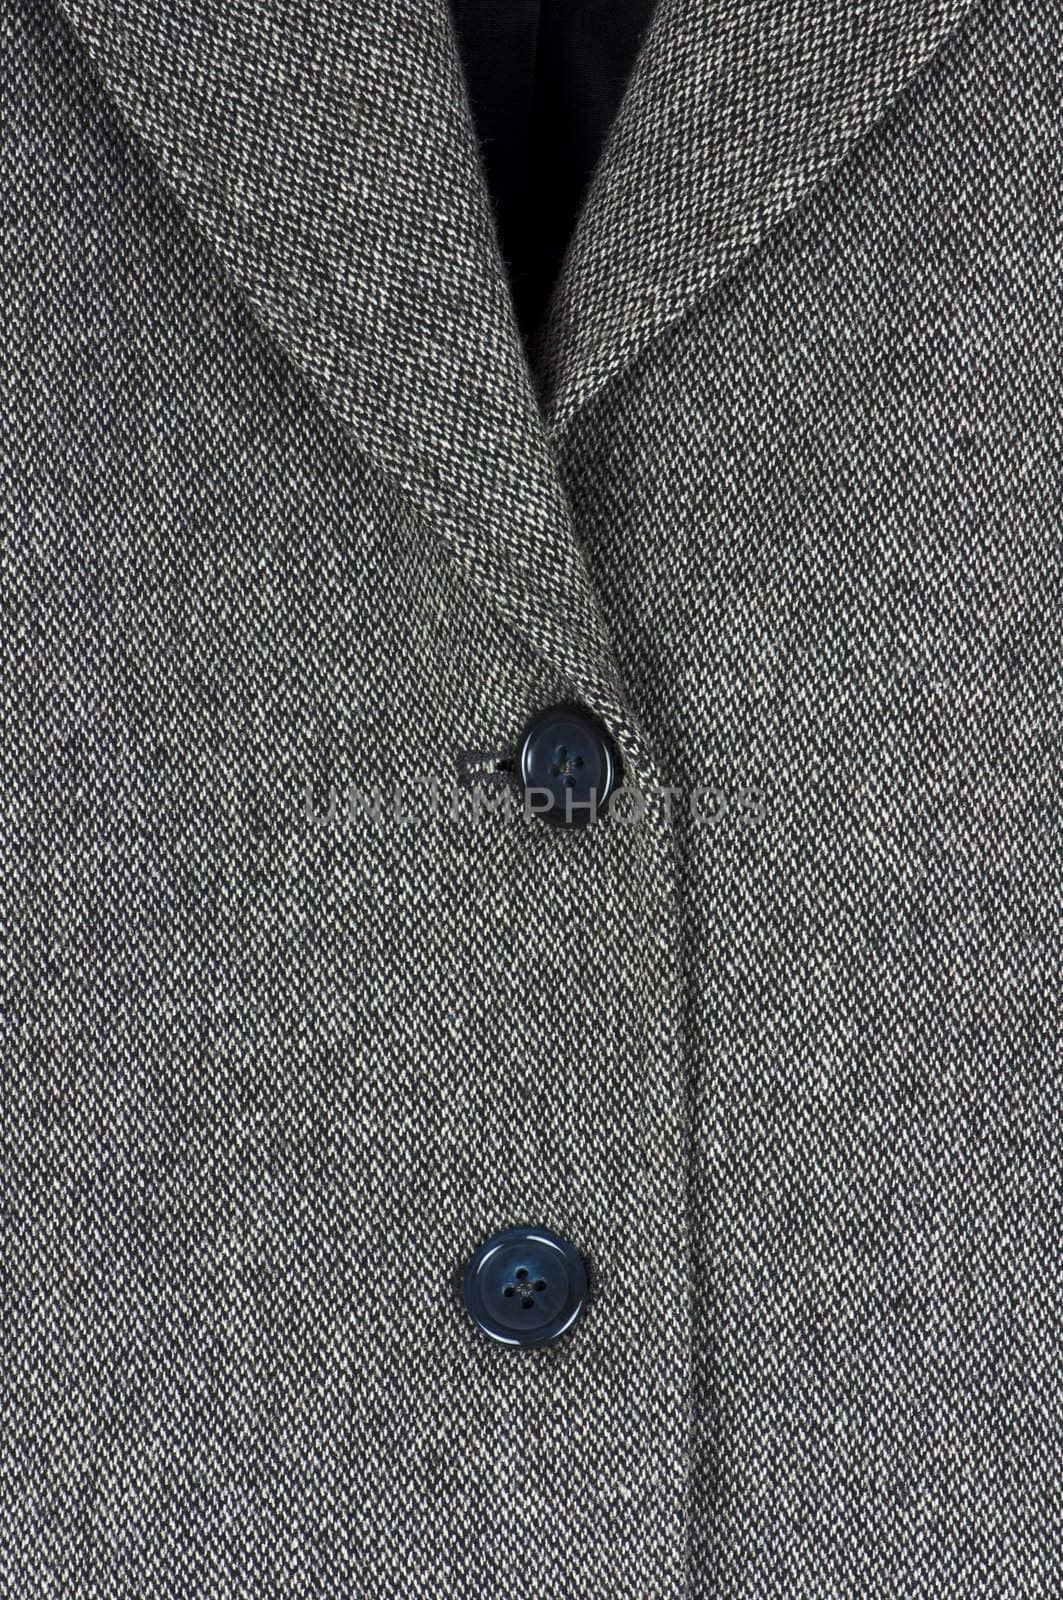 Tweed jacket detail by dutourdumonde